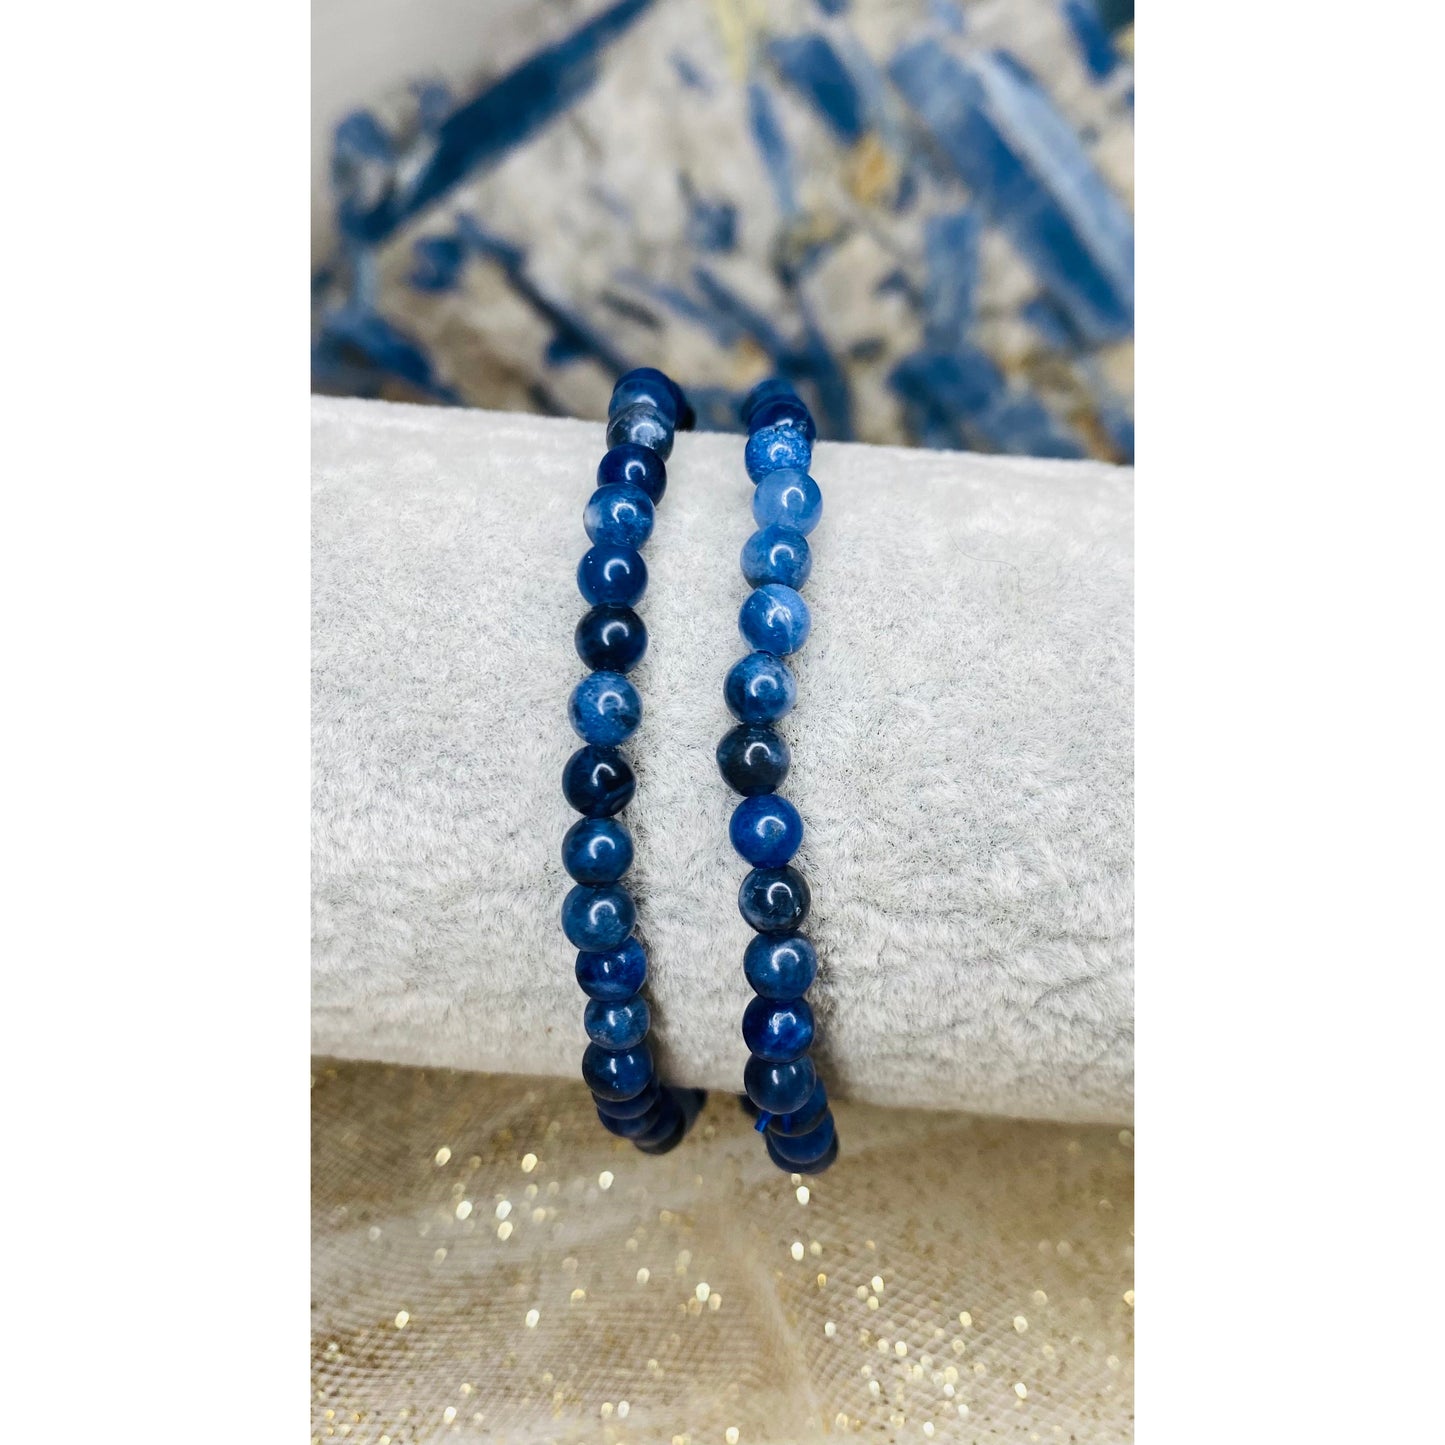 Beautiful Boho Style Bead Bracelets in Mini Size - Mix & Match